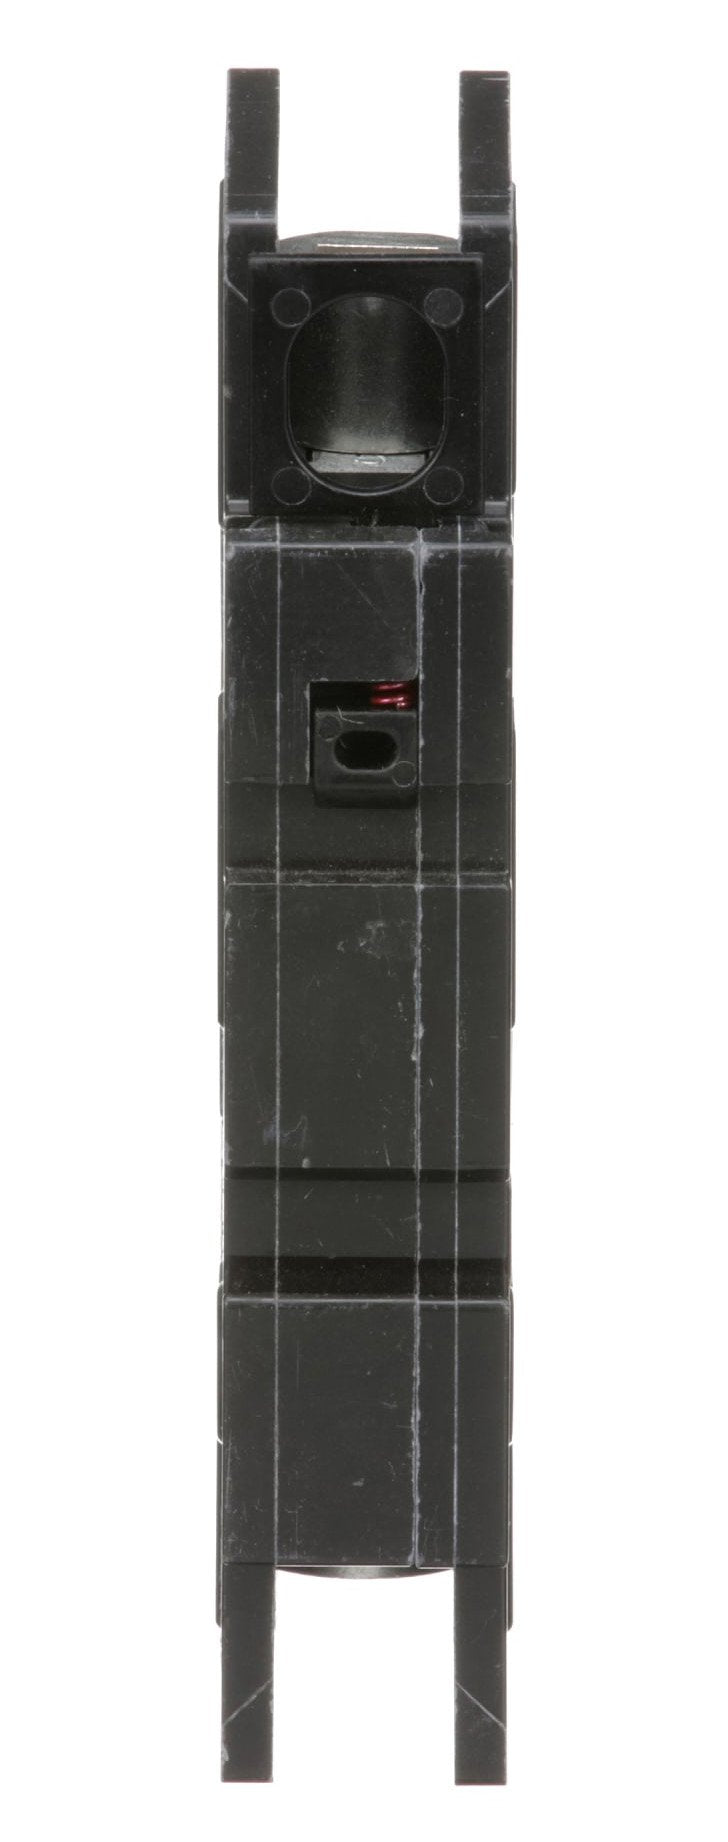 QOU115 - Square D - 15 Amp Circuit Breaker